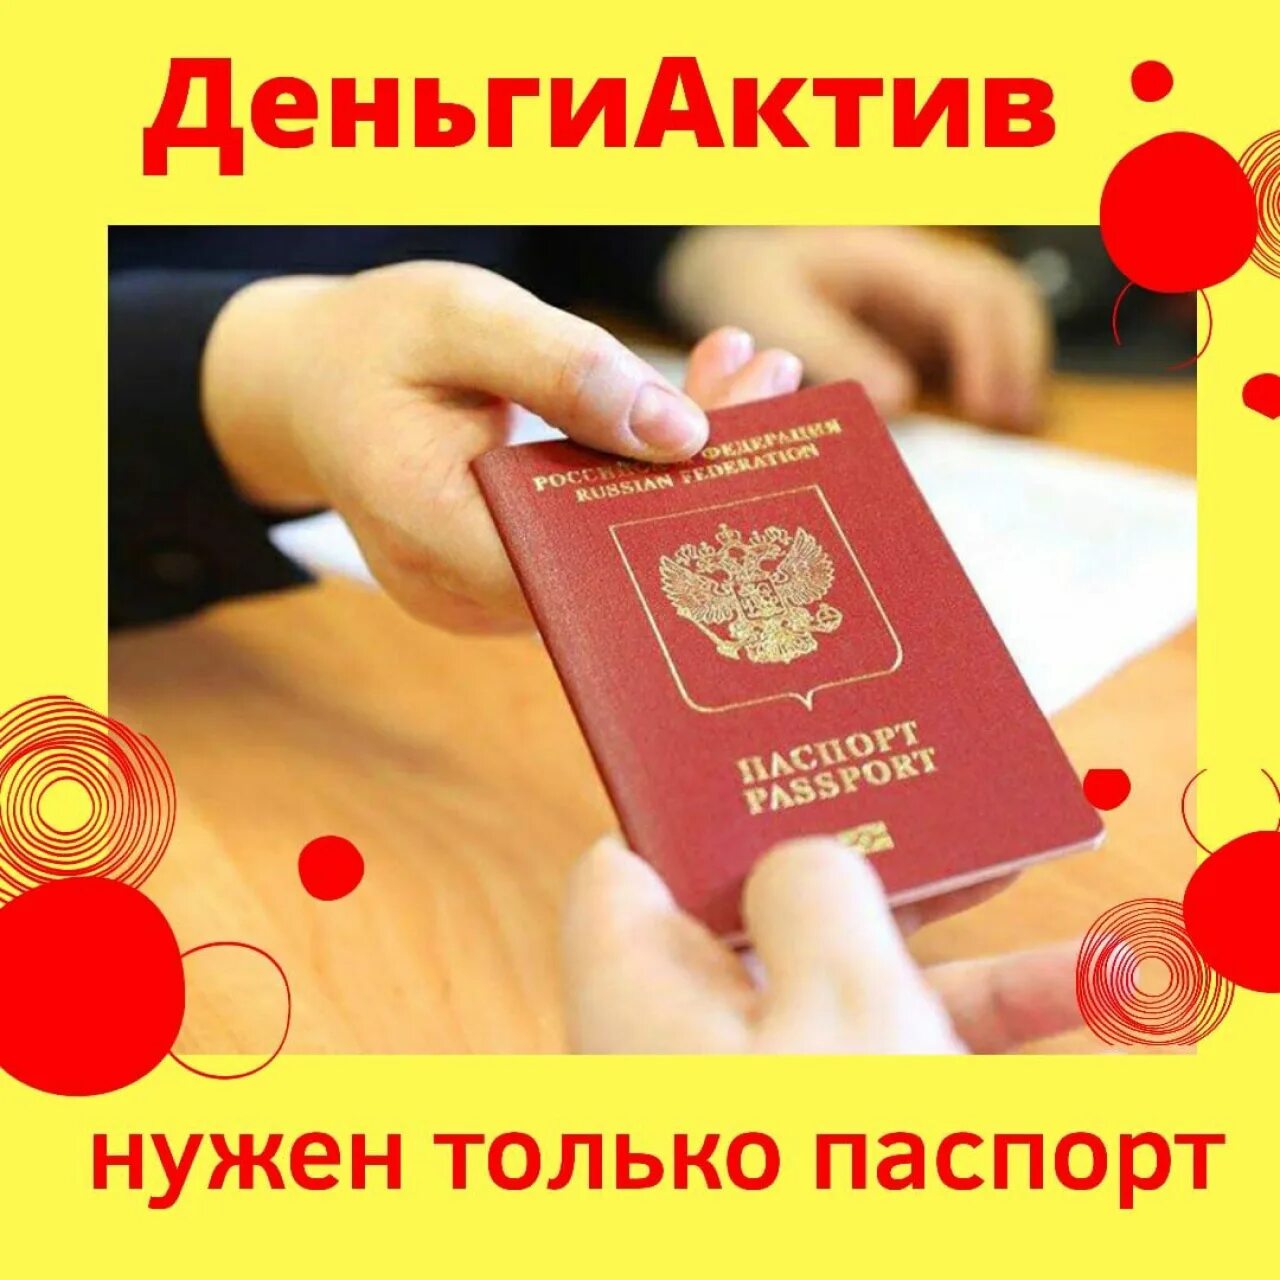 Актив деньги. Деньги Актив. Актив деньги Нижнекамск. Деньги Актив логотип. Паспорт нужен на выборах.